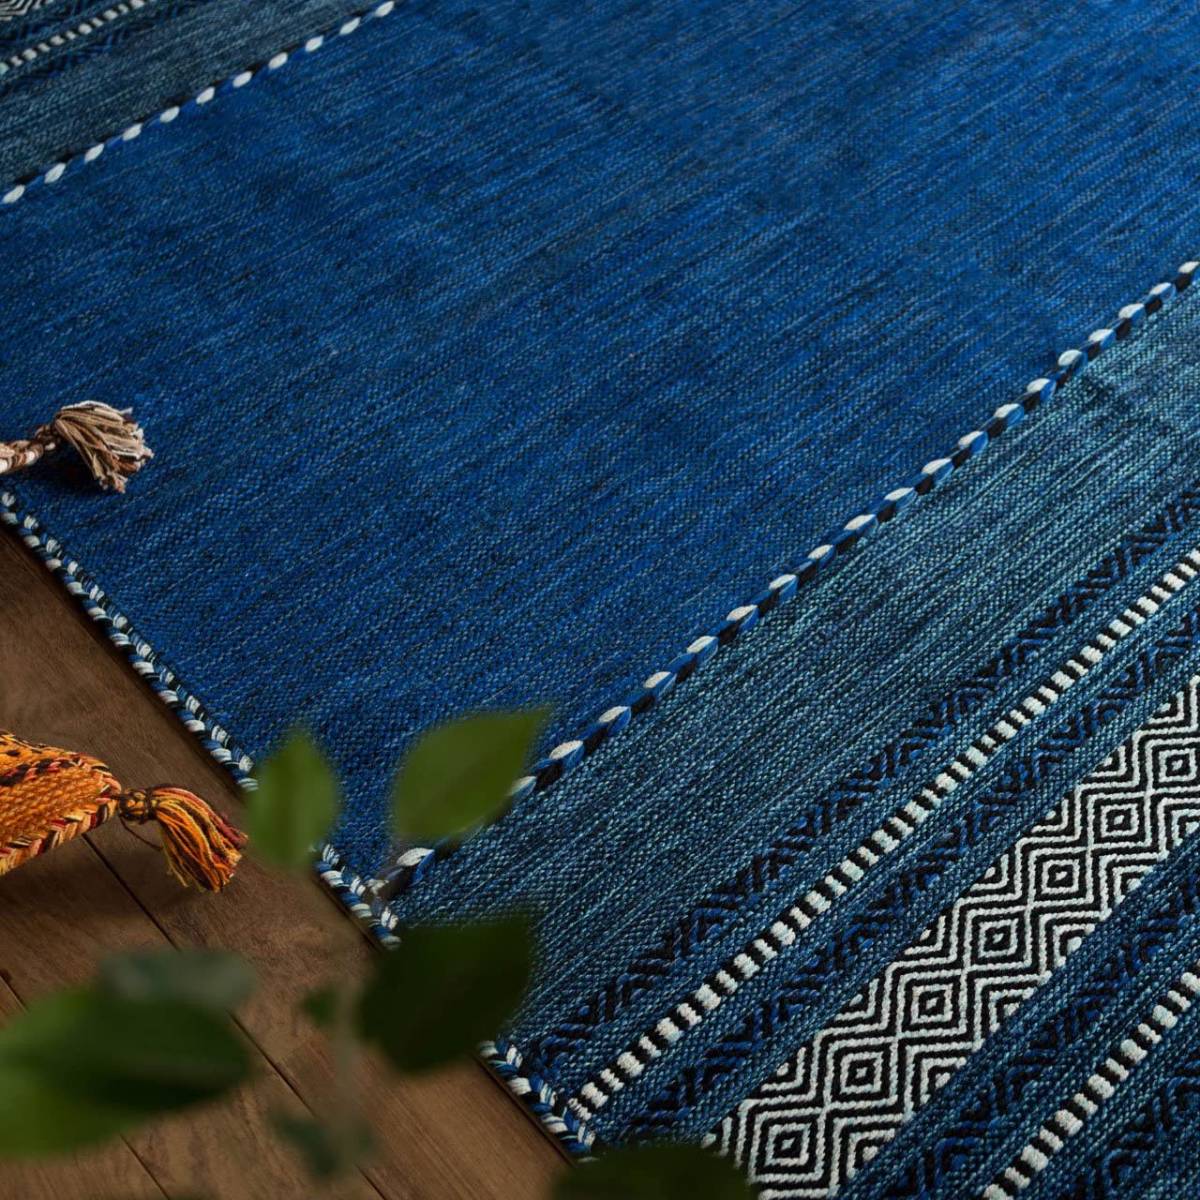 [送料込み] 手織り アジアン ラグマット インドキリム 140x200 1.5畳 ブルー インド綿ラグ おしゃれ キリム カーペット リビング 寝室 ラグ